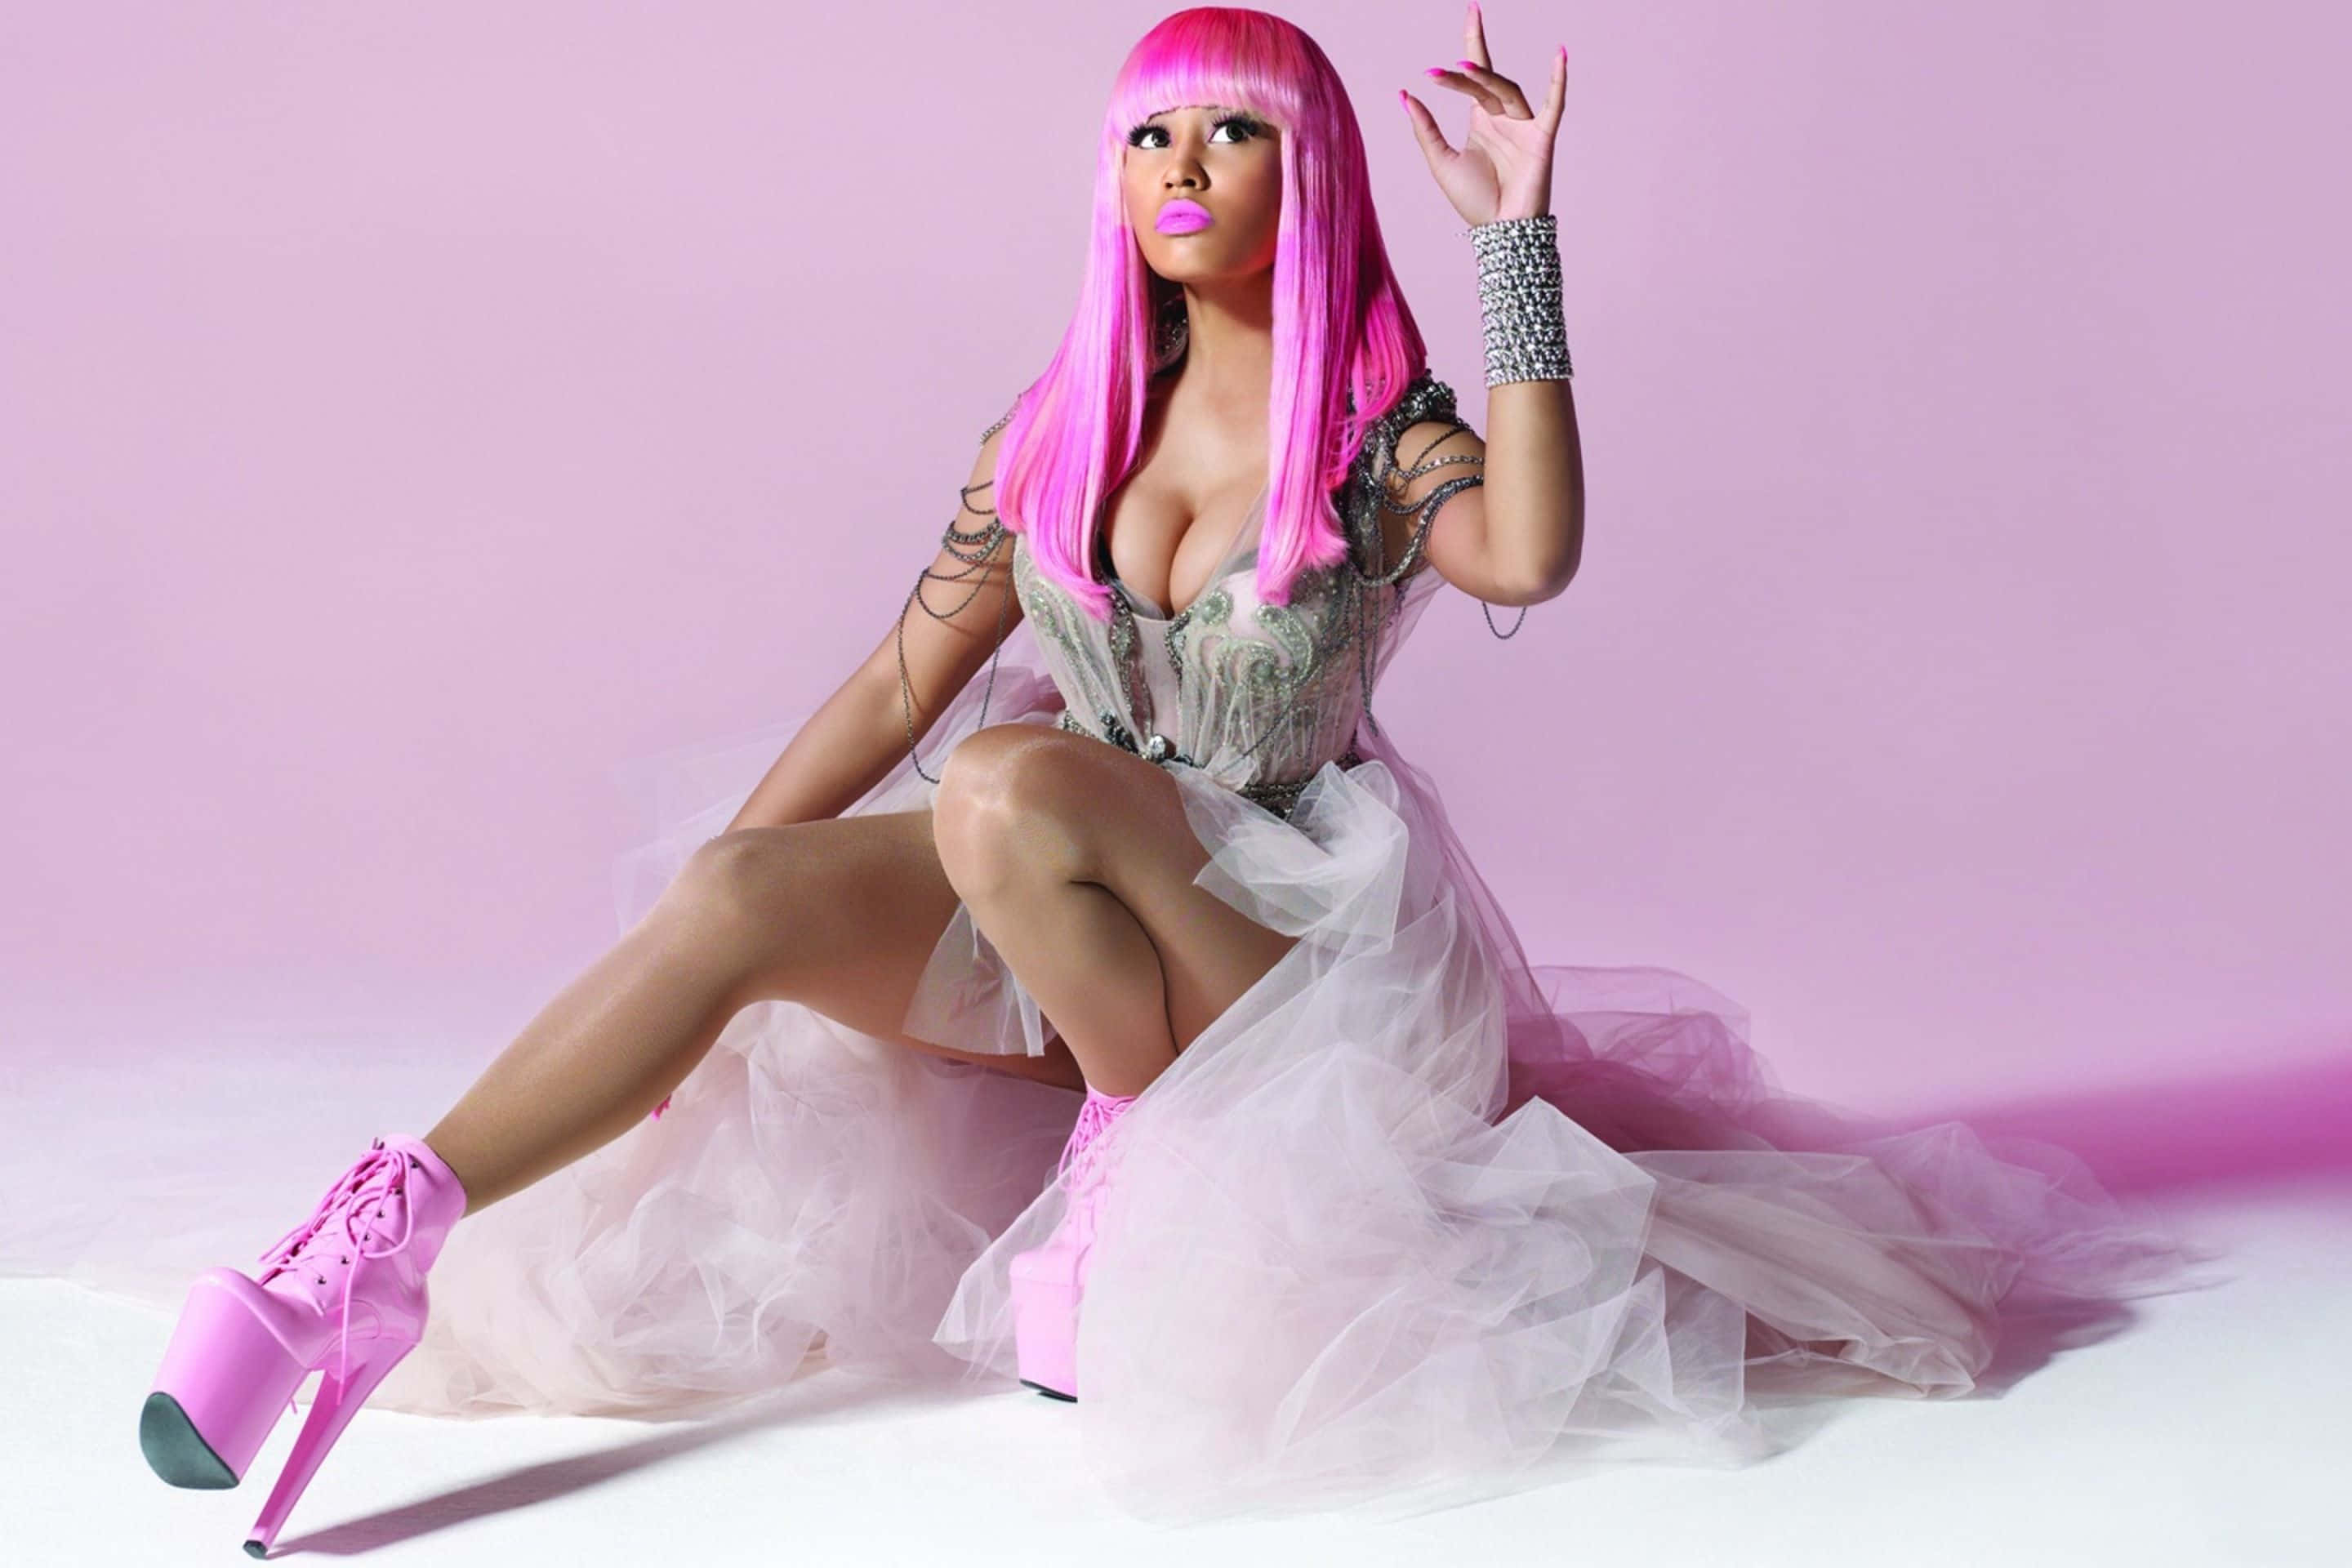 Nicki Minaj: A Fashion Icon and Trailblazing Music Star